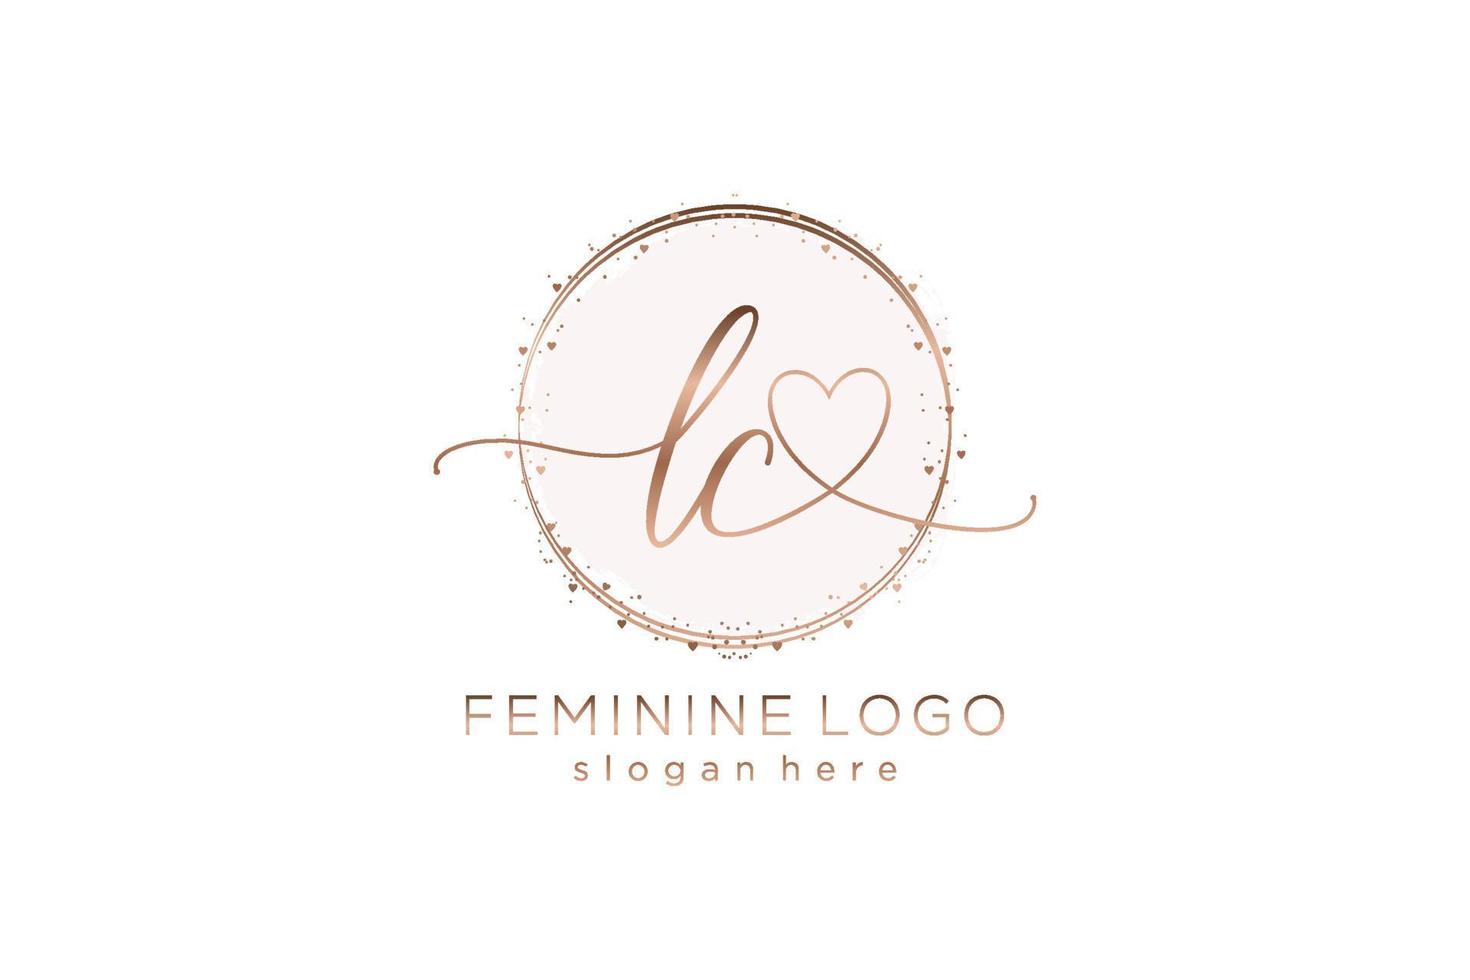 logotipo inicial de escritura a mano lc con plantilla de círculo logotipo vectorial de boda inicial, moda, floral y botánica con plantilla creativa. vector